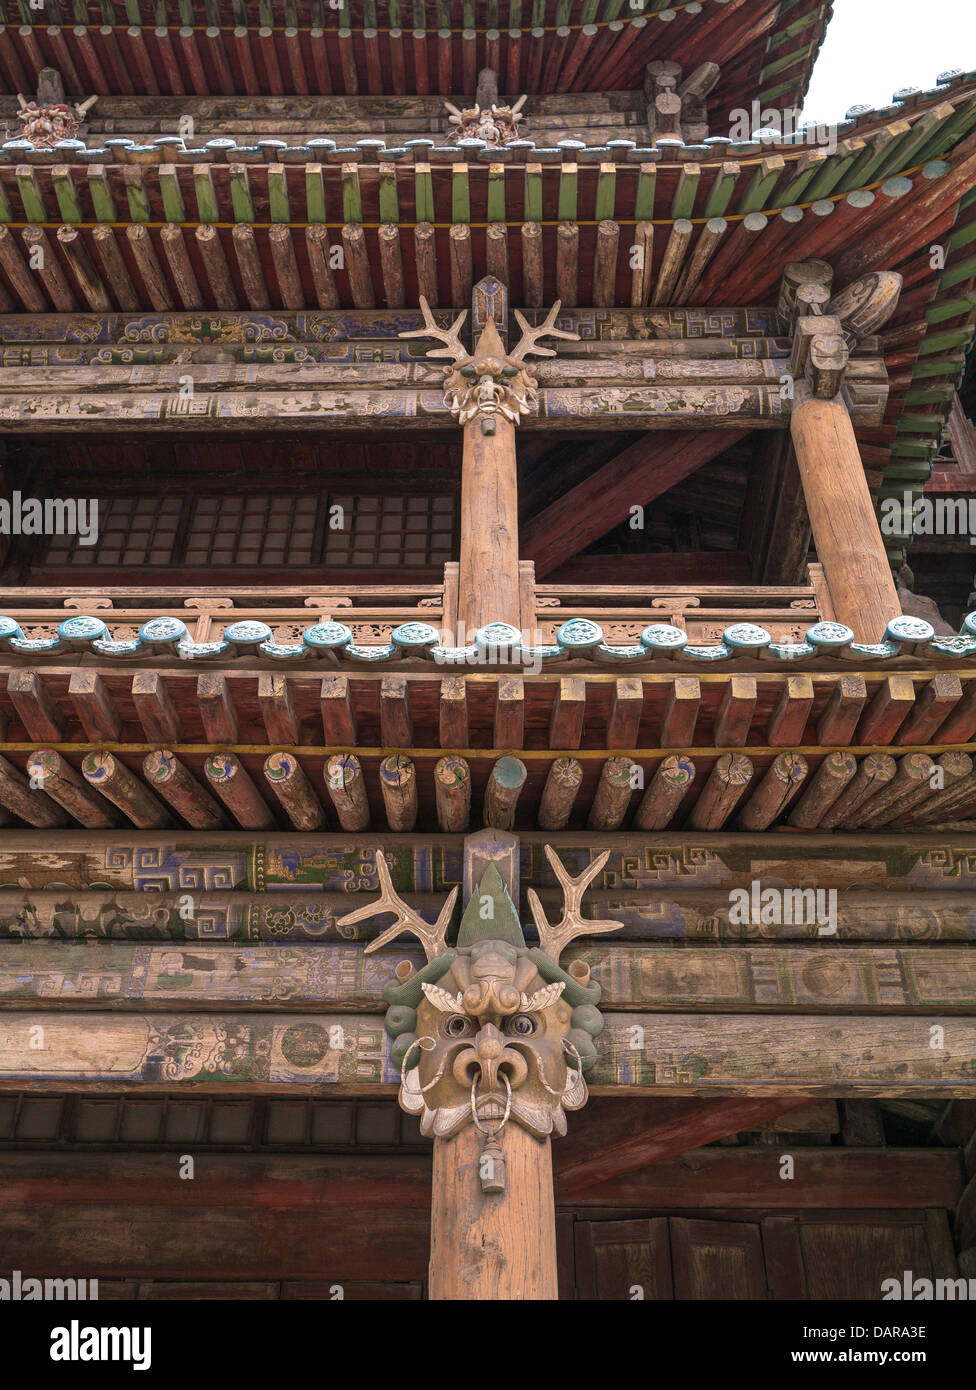 Bâtiment en bois de décoration. Grottes de Yungang. Shanxi. Chine Banque D'Images